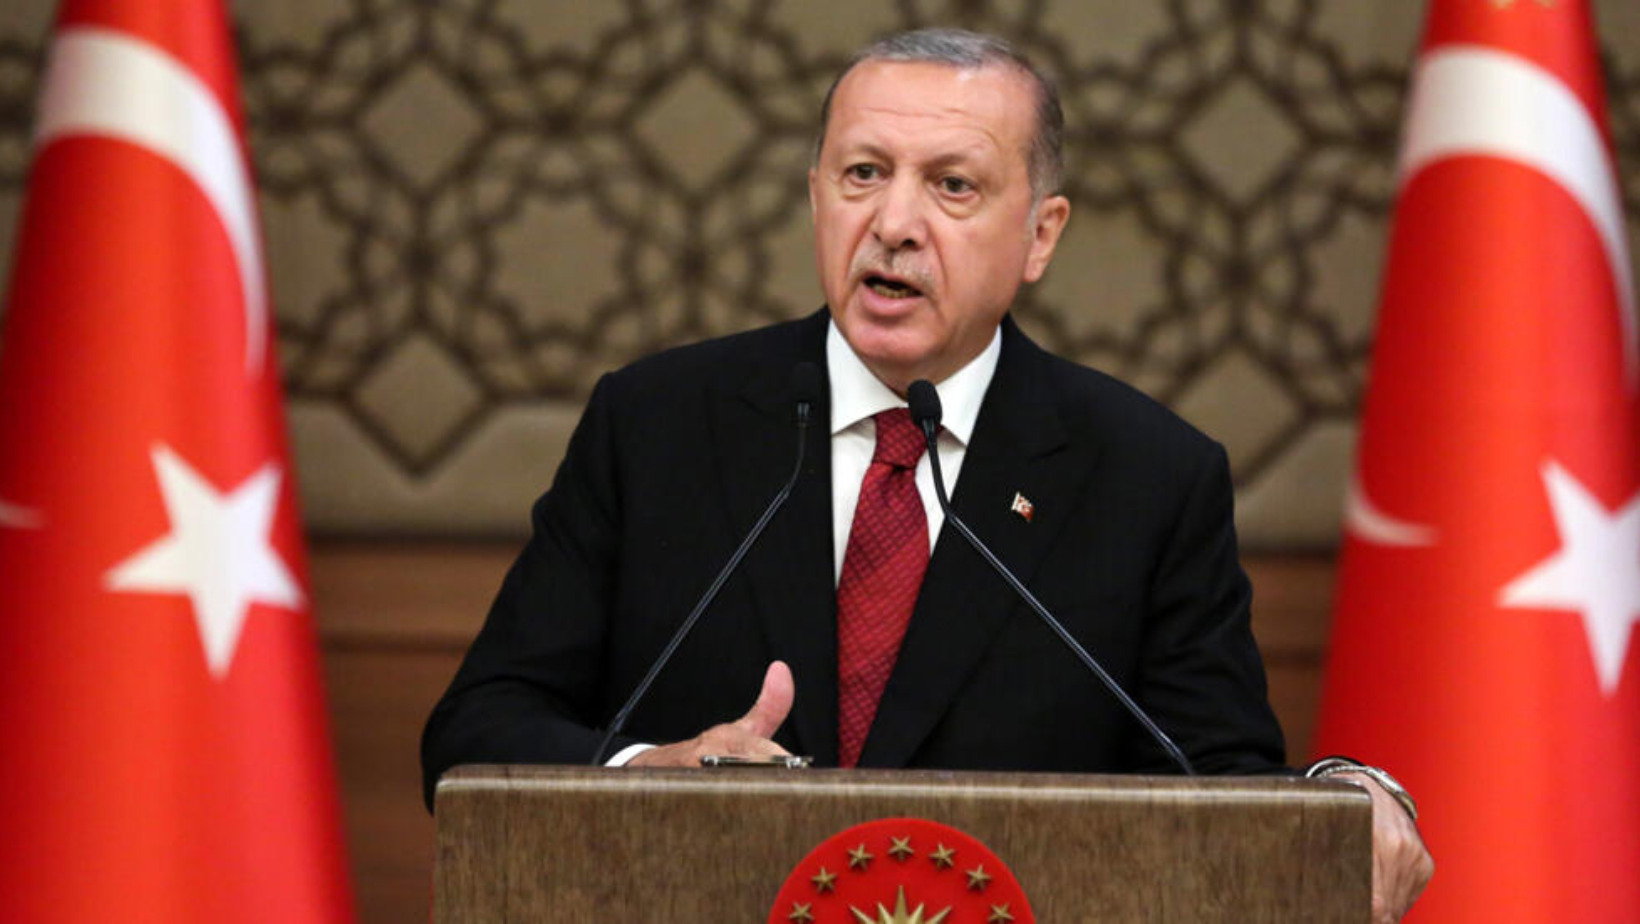 Recep Tayyip Erdoğan, presidente de Turquía. Foto: Fuente externa